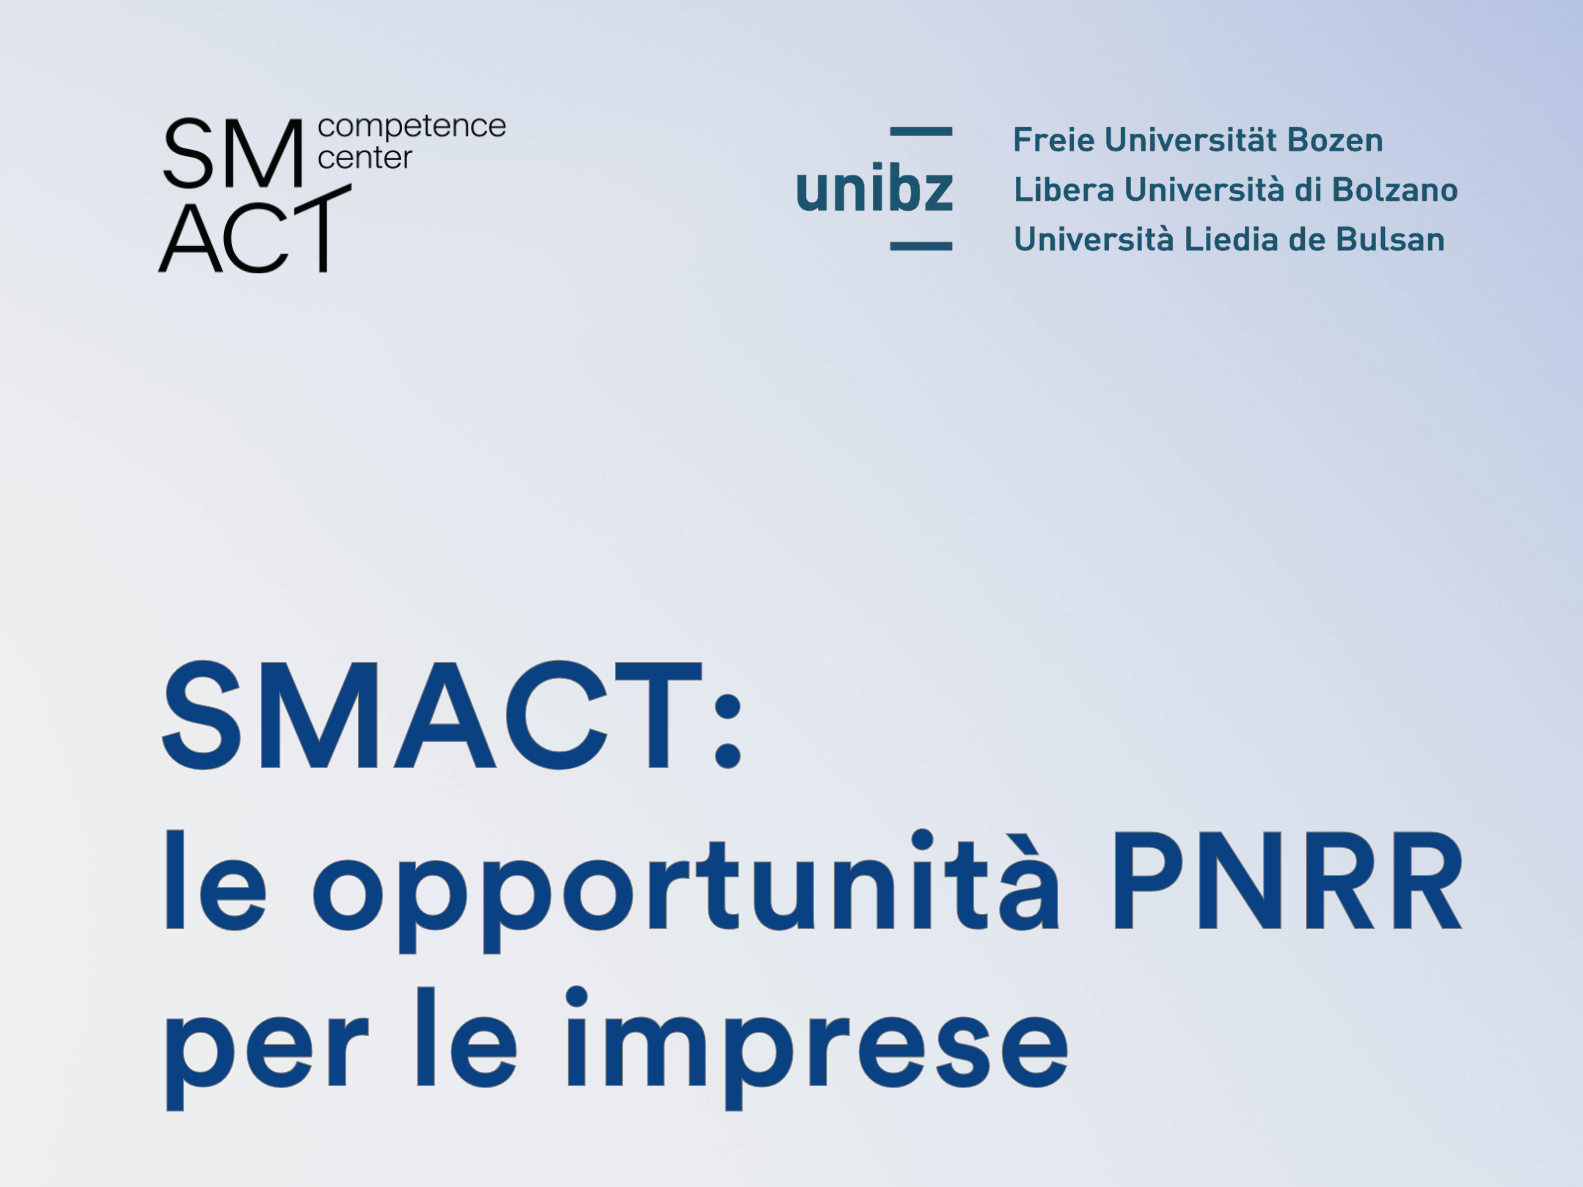 SMACT: le opportunità PNRRper le imprese